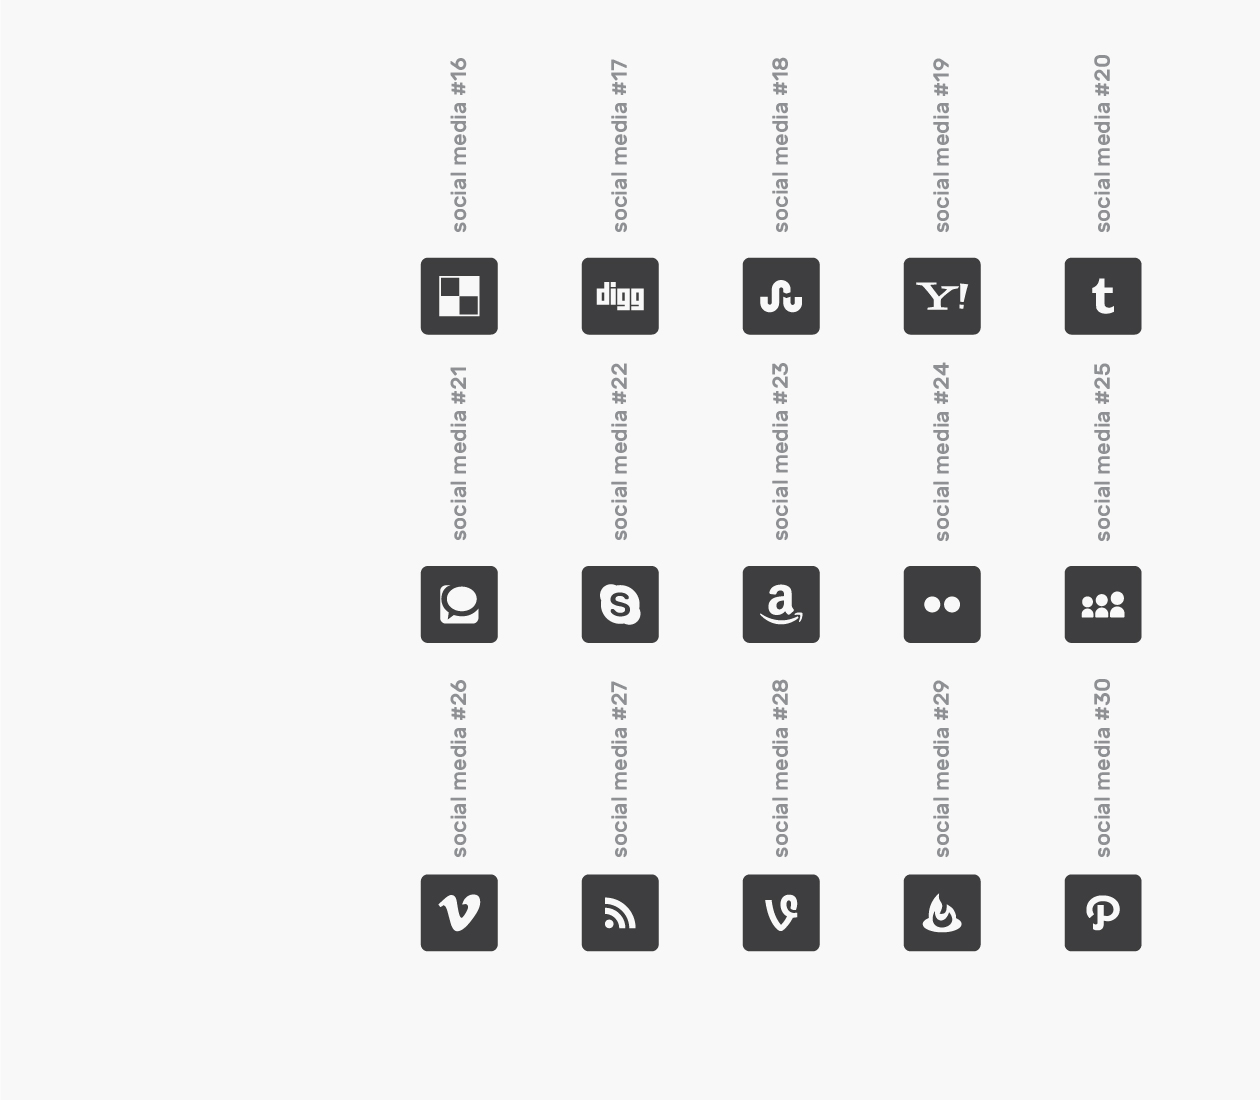 可自定义品牌颜色网页&图形设计彩色矢量蚂蚁素材精选图标 Branded Color Icons插图(13)